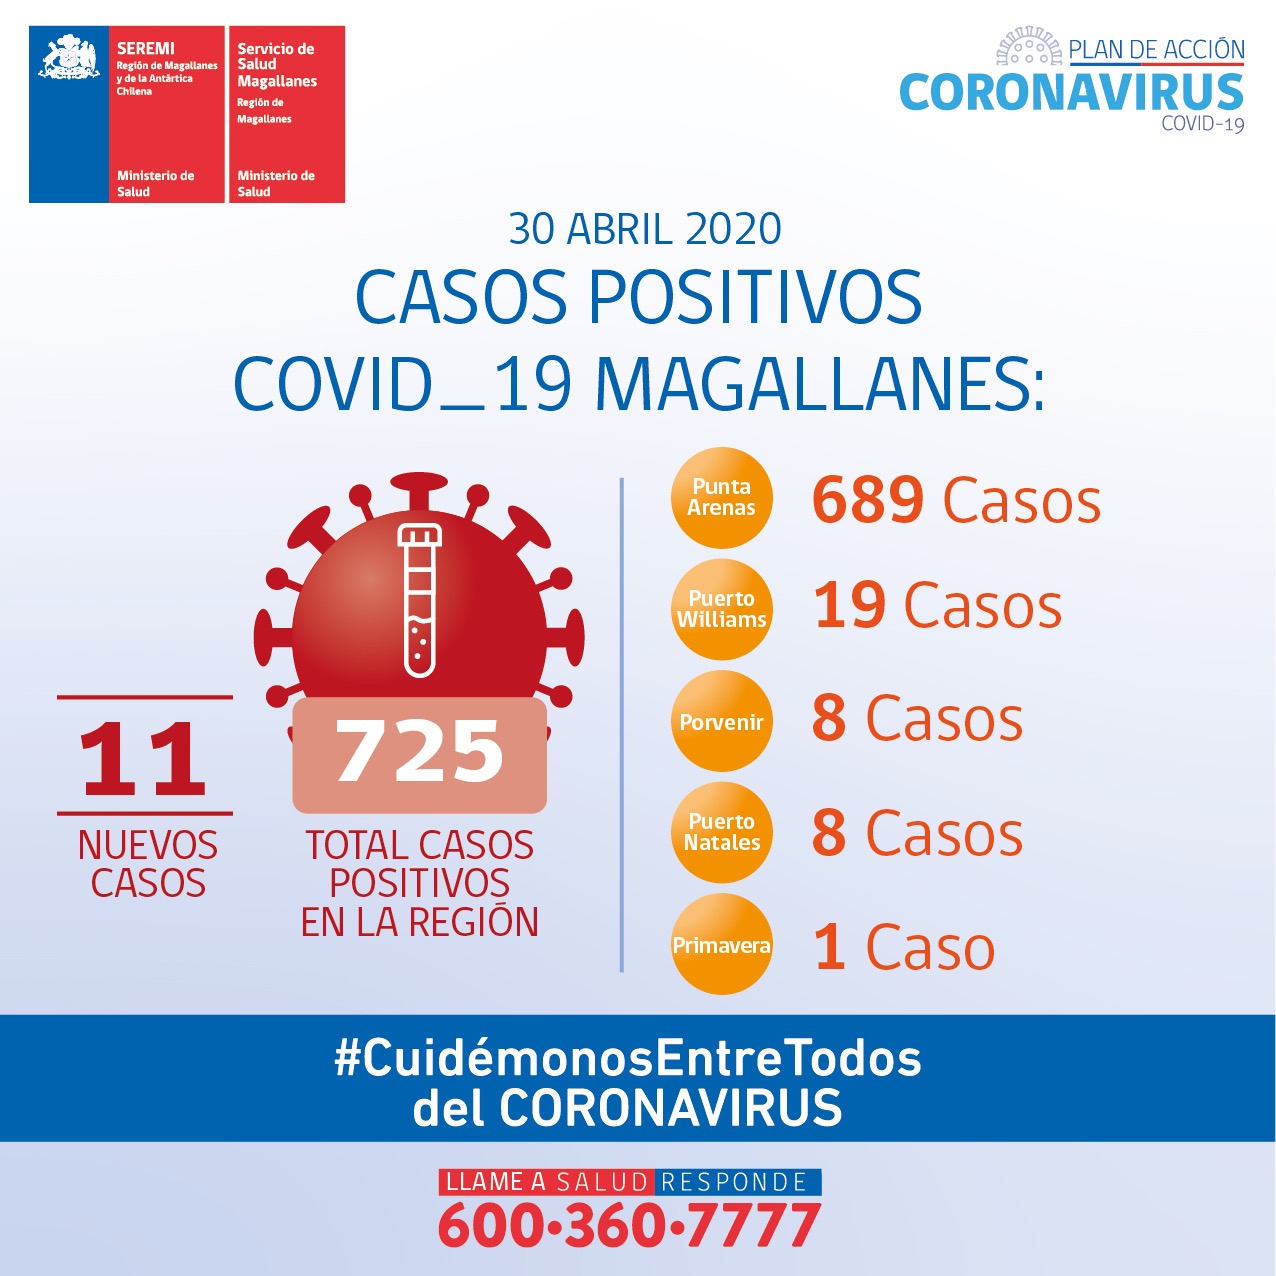 11 personas son nuevos casos de Covid19 en Magallanes al 30 de abril: SEREMI de Salud anunció más restricciones en permisos individuales de desplazamiento